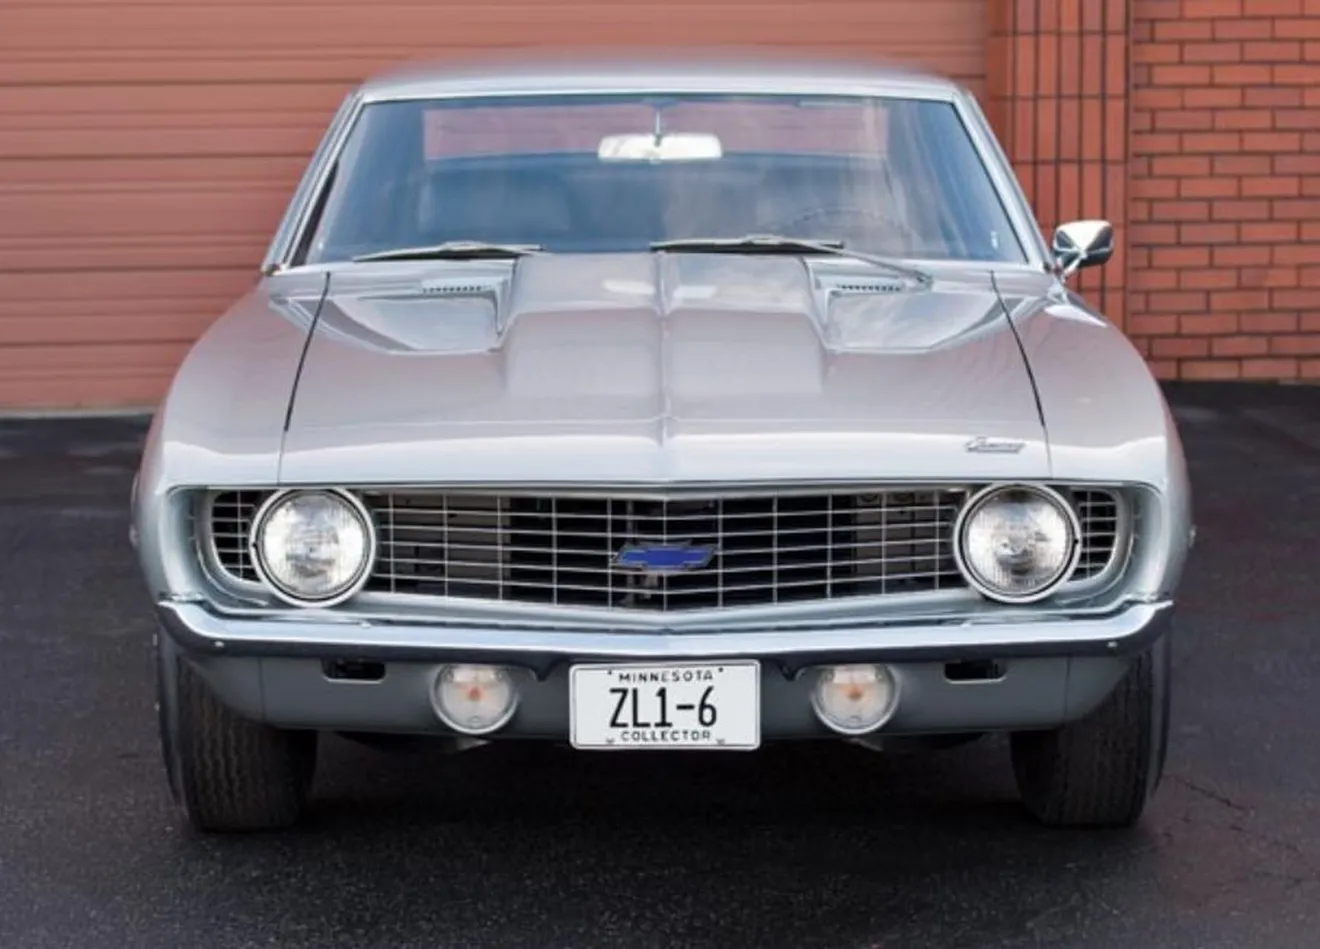 Descubren uno de los míticos bloques Chevrolet V8 ZL-1 a estrenar 40 años después